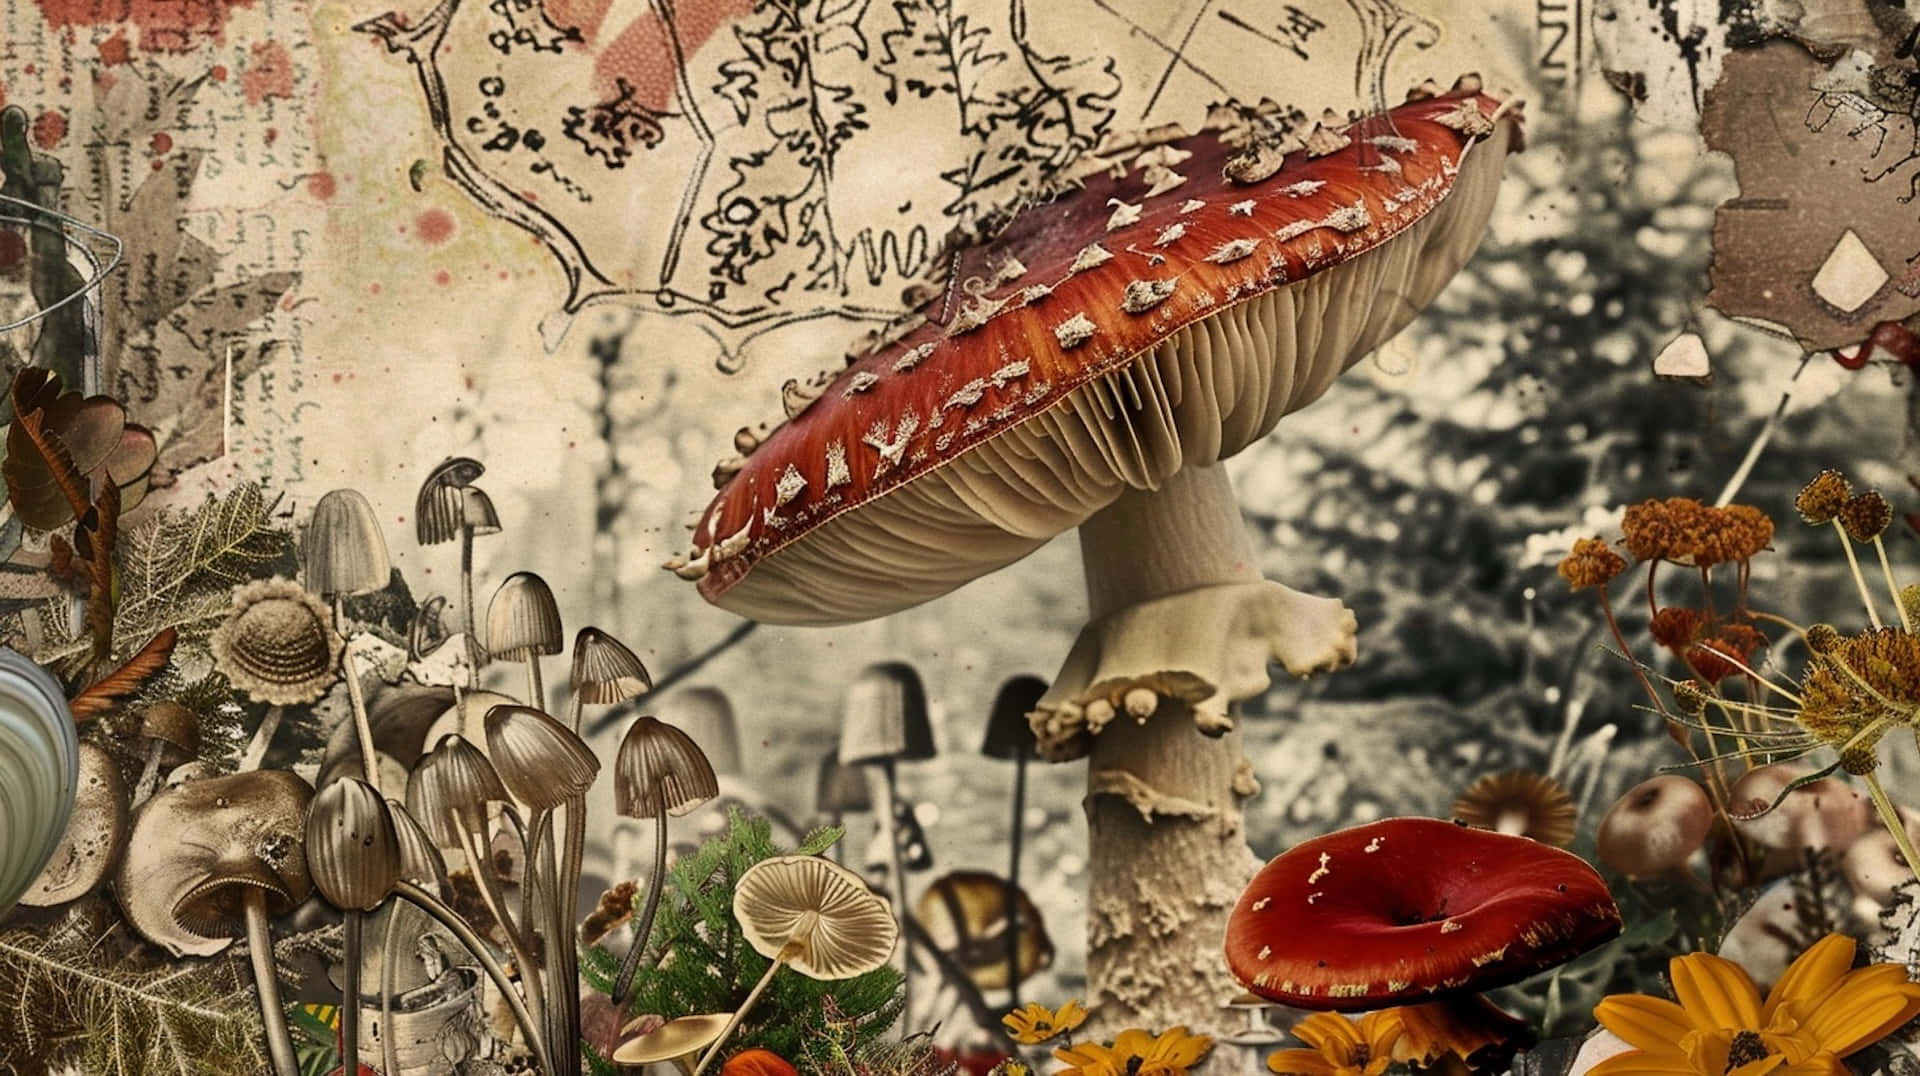 Goblincore Fantasy Mushroom Collage Wallpaper